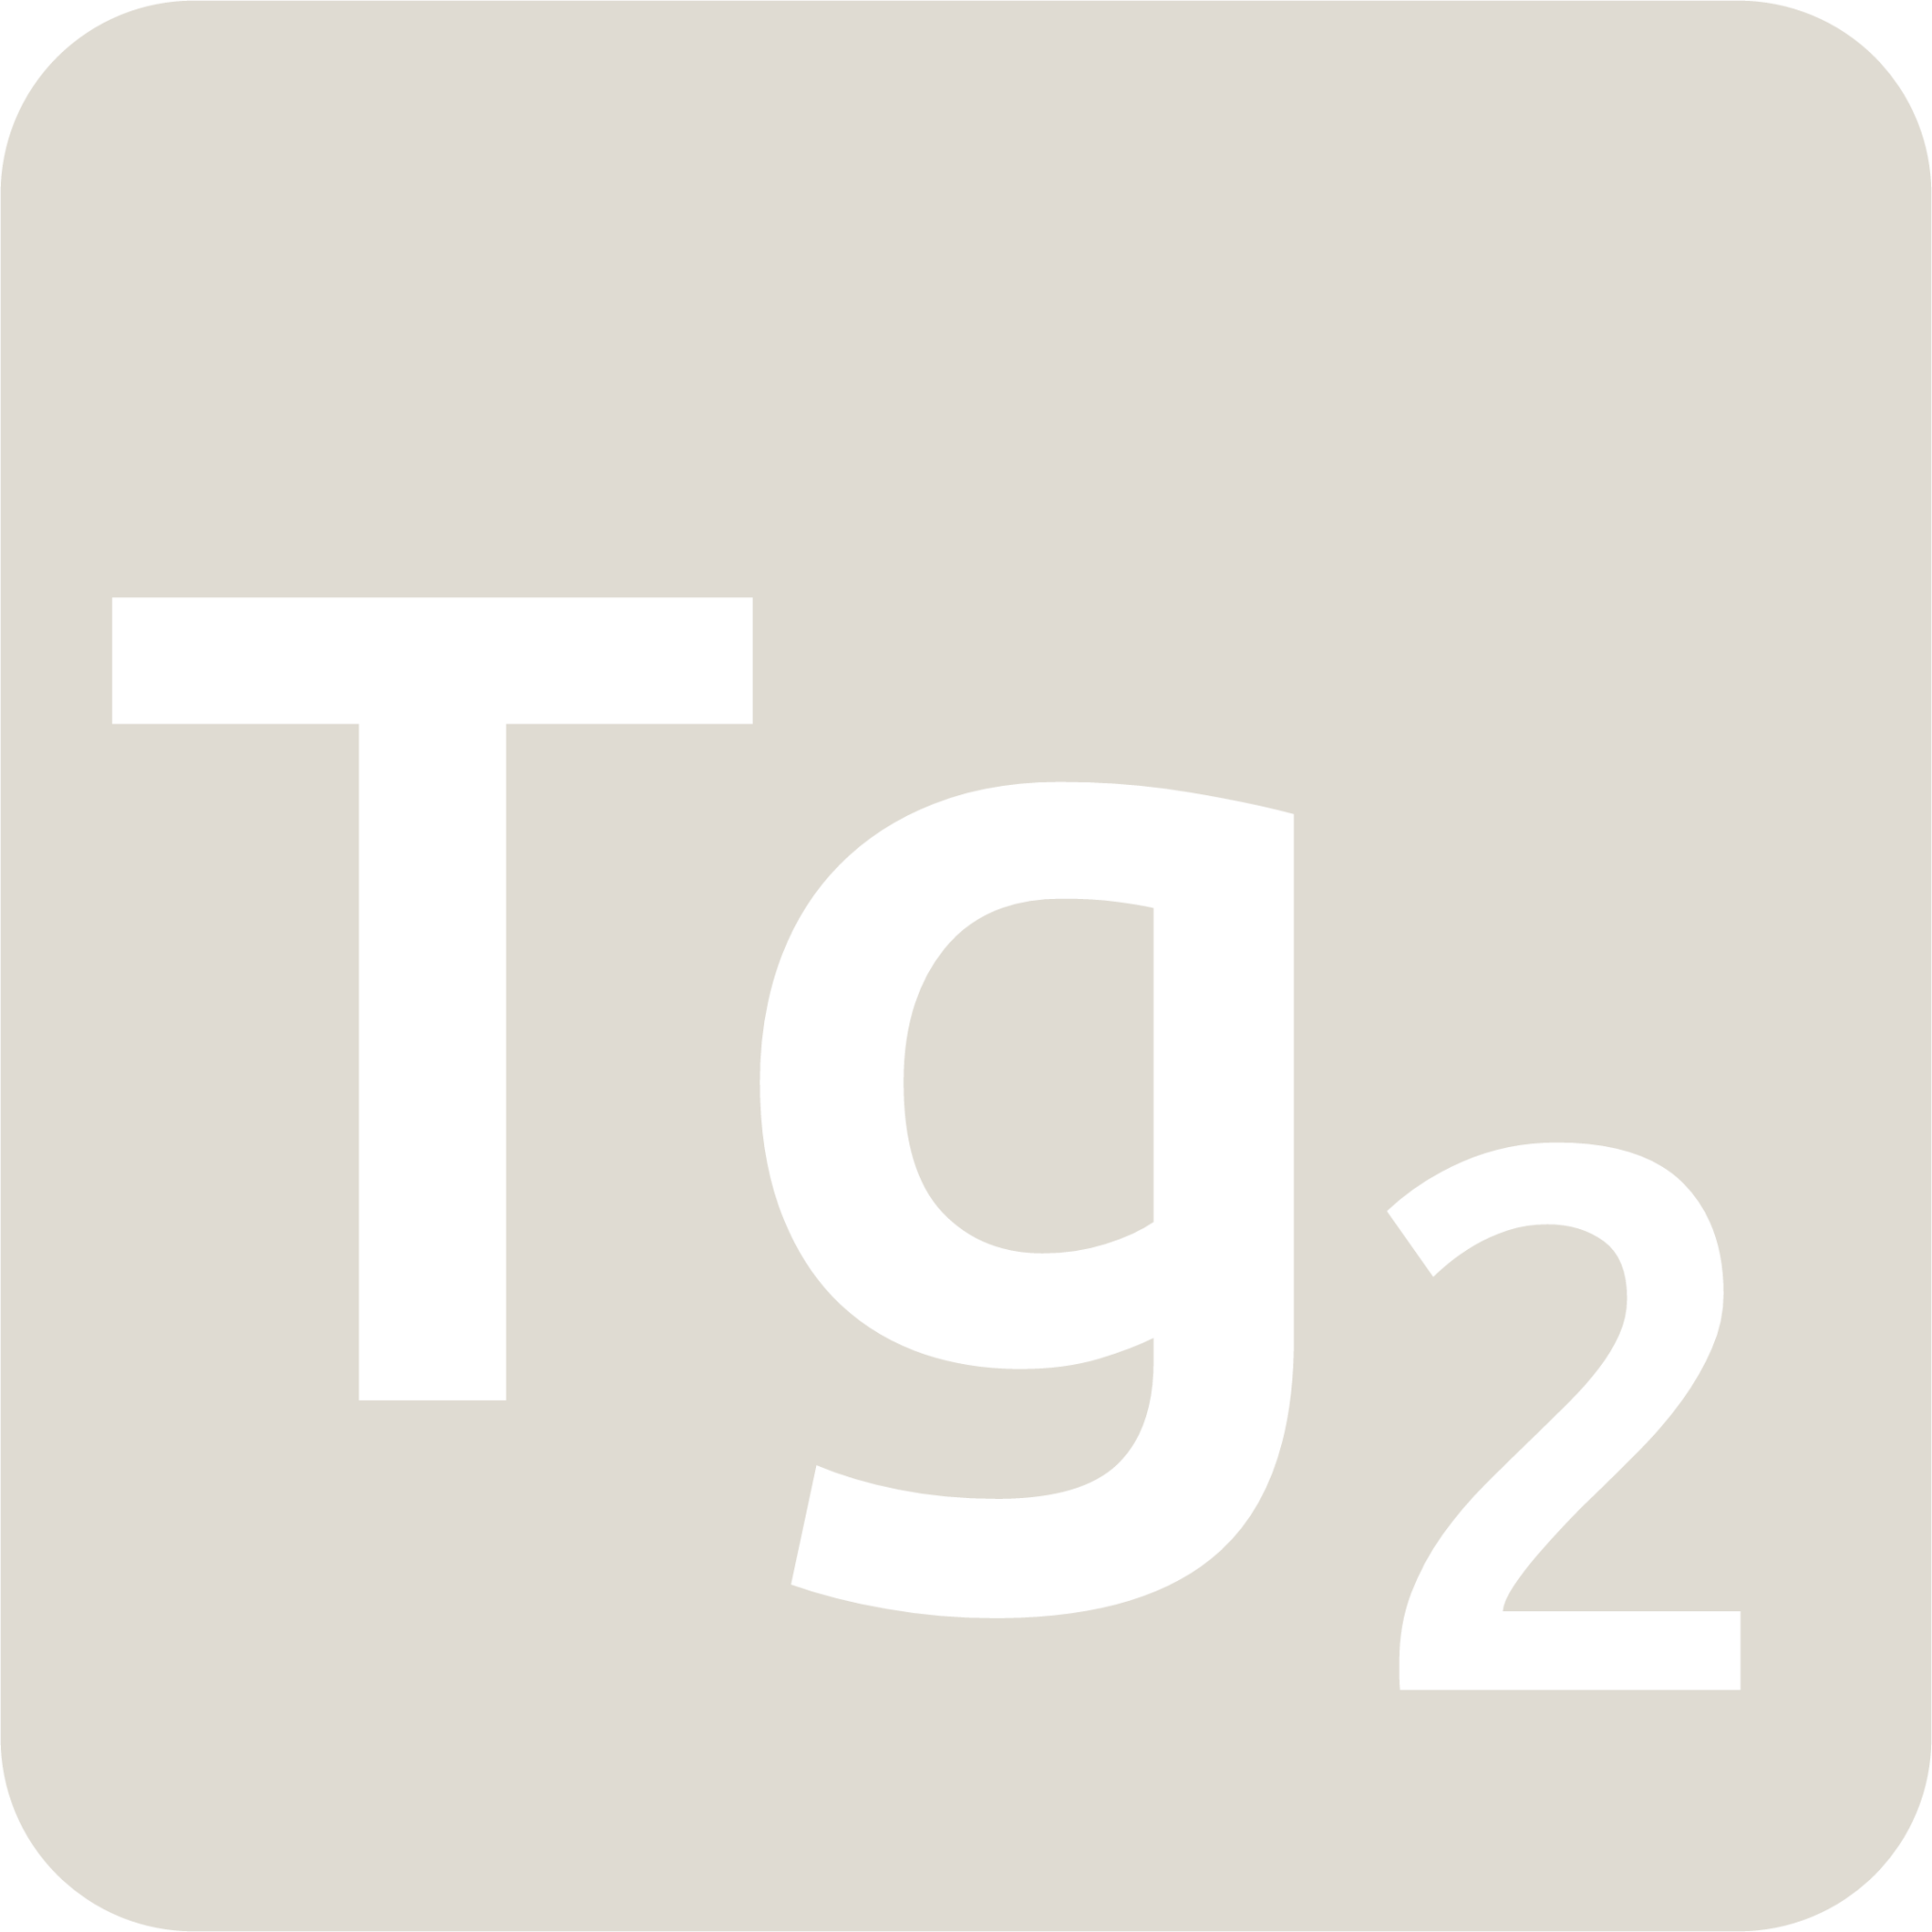 indicator keyboard Tg 2 icon